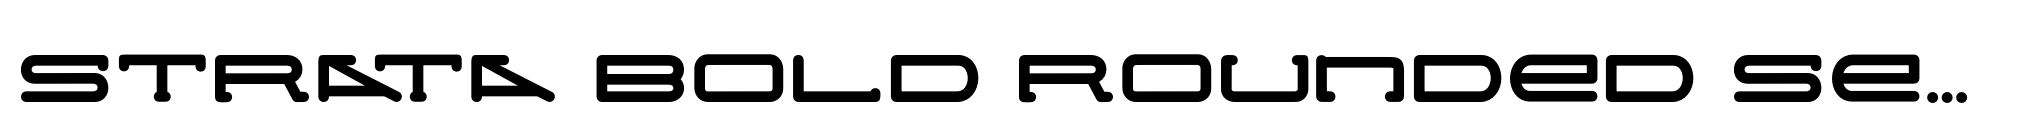 Strata Bold Rounded Serif image